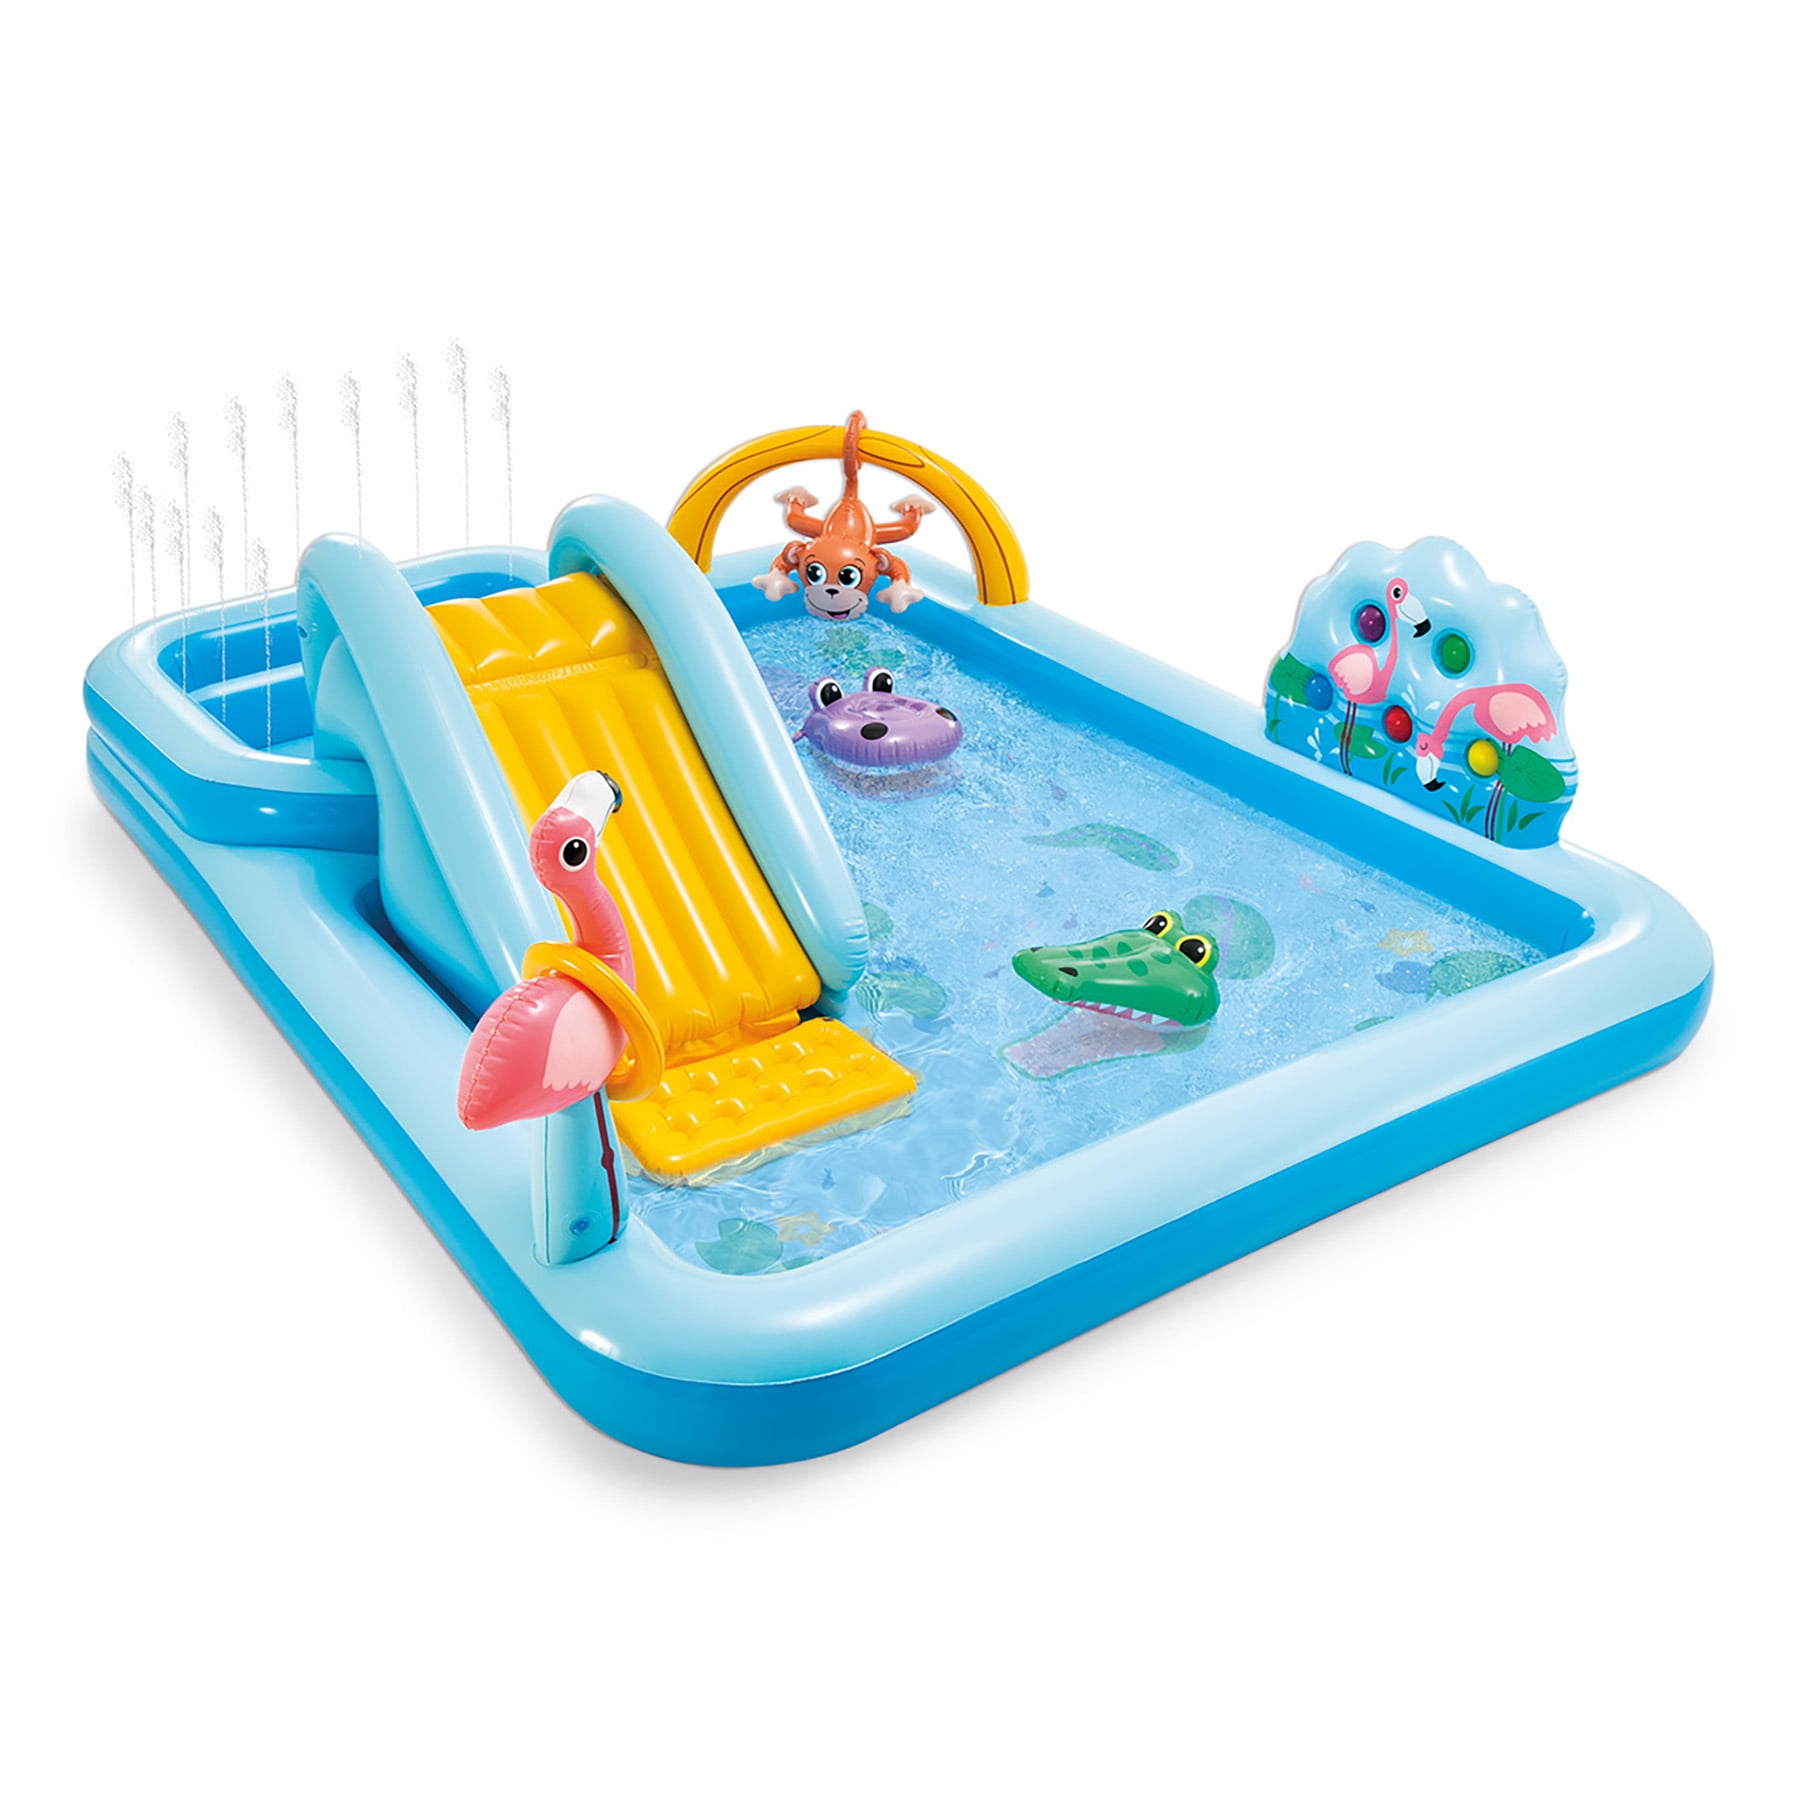 Intex 57135 Dinoland Play Center piscine gonflable pour enfants aire de jeux 